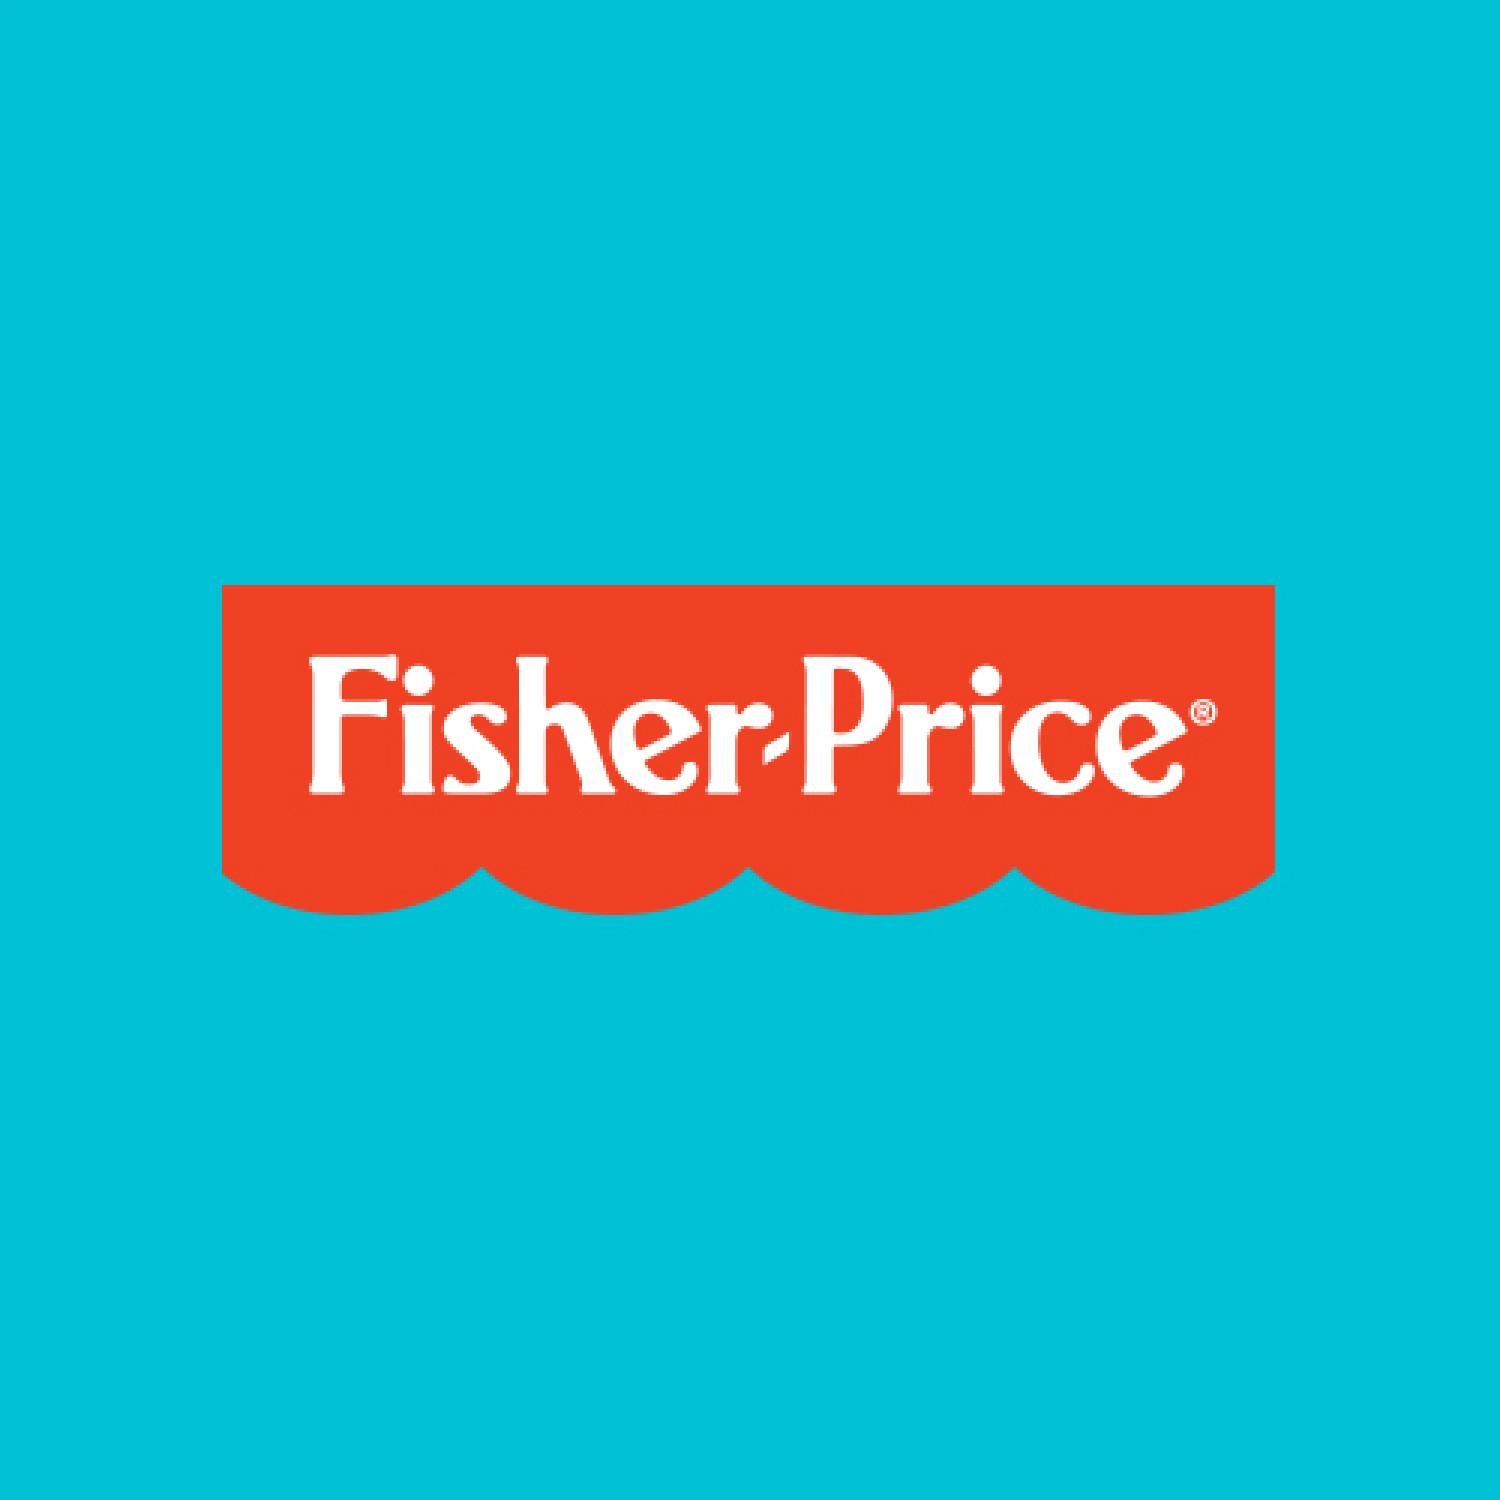 Μαζική ανάκληση βρεφικού προϊόντος  από την Fisher Price - Τι πρέπει  να κάνουν οικαταναλωτές